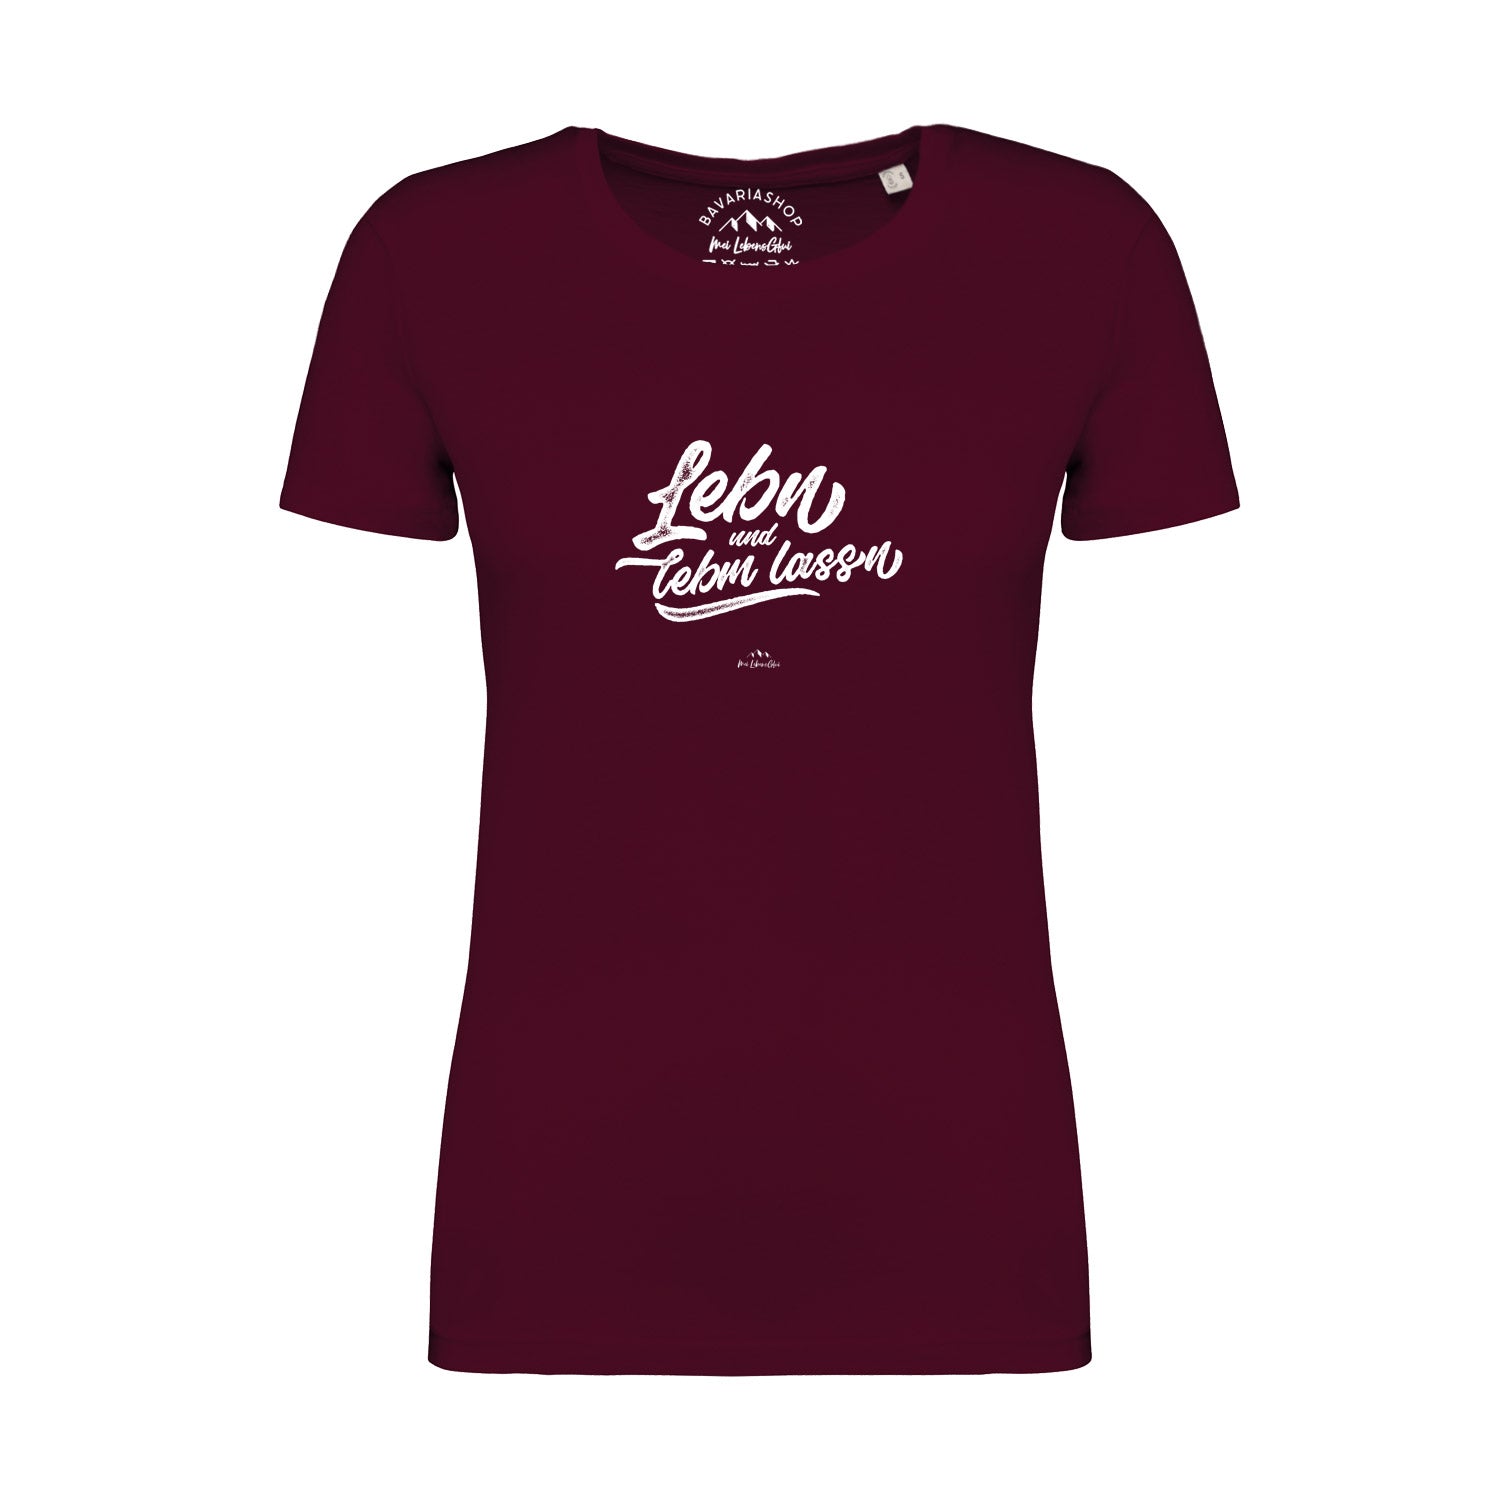 Damen T-Shirt "Lebn und lebm lassn"